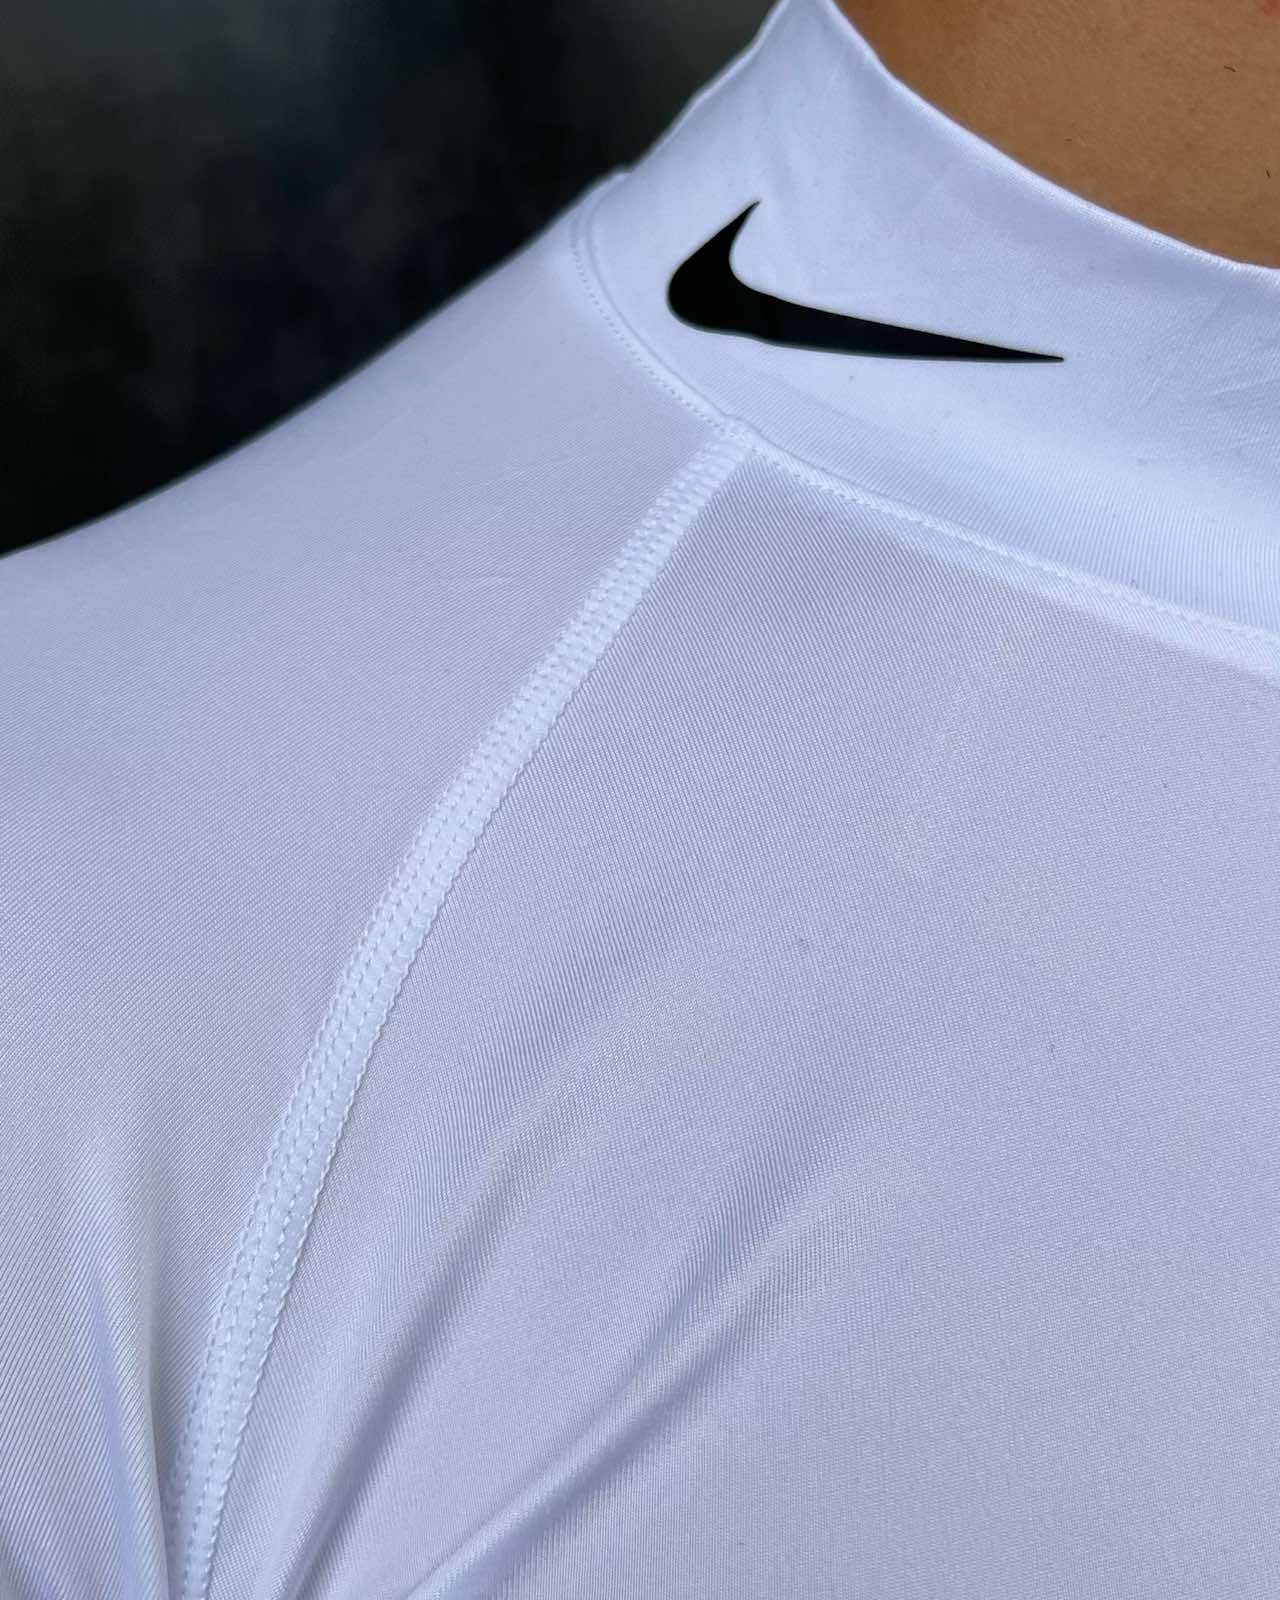 Компресійний костюм Nike 3в1: рашгард, шорти, легінси